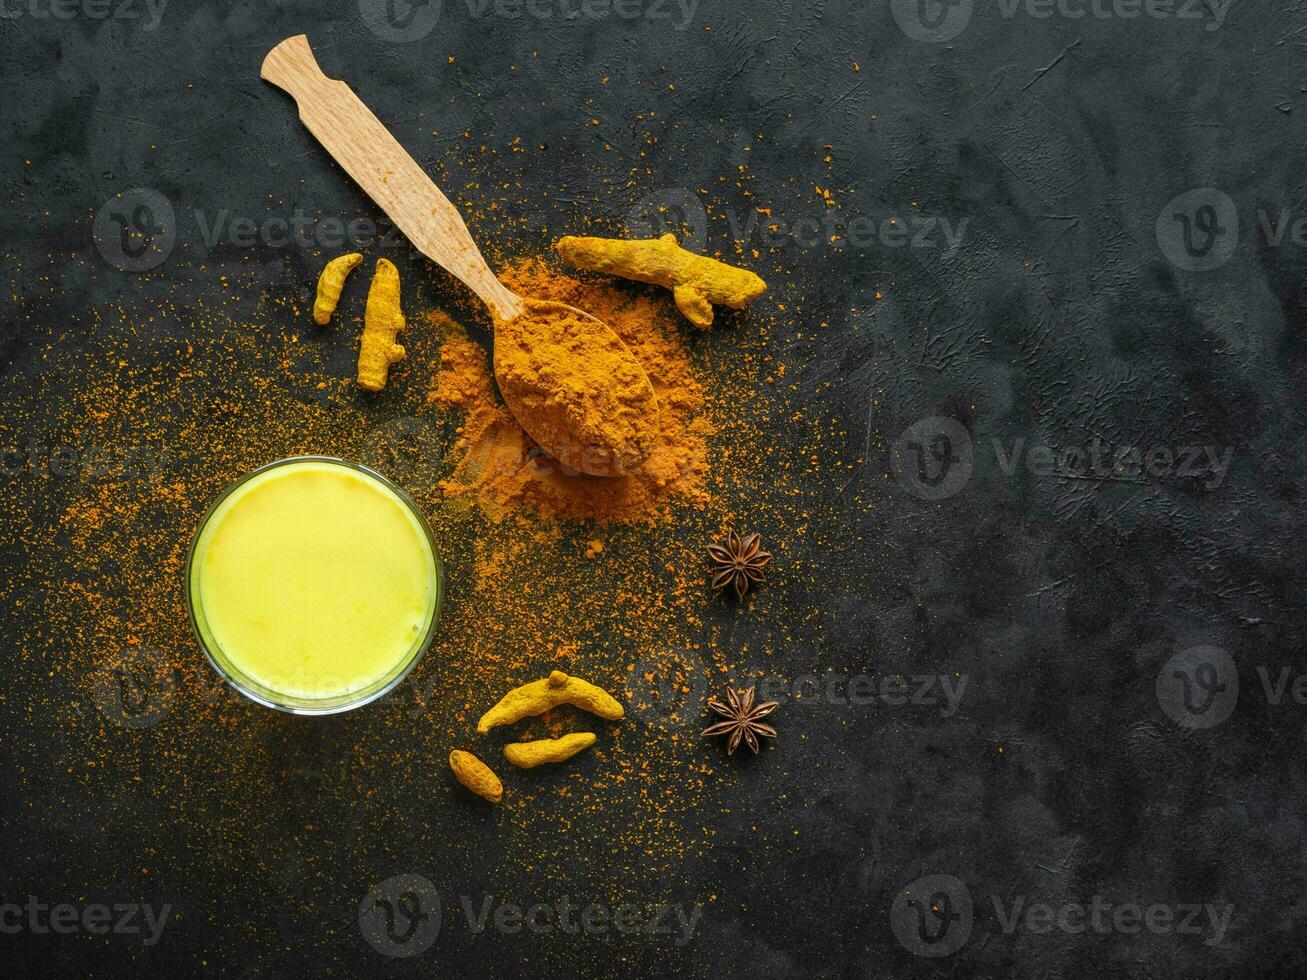 traditionell indisch trinken Kurkuma golden Milch foto